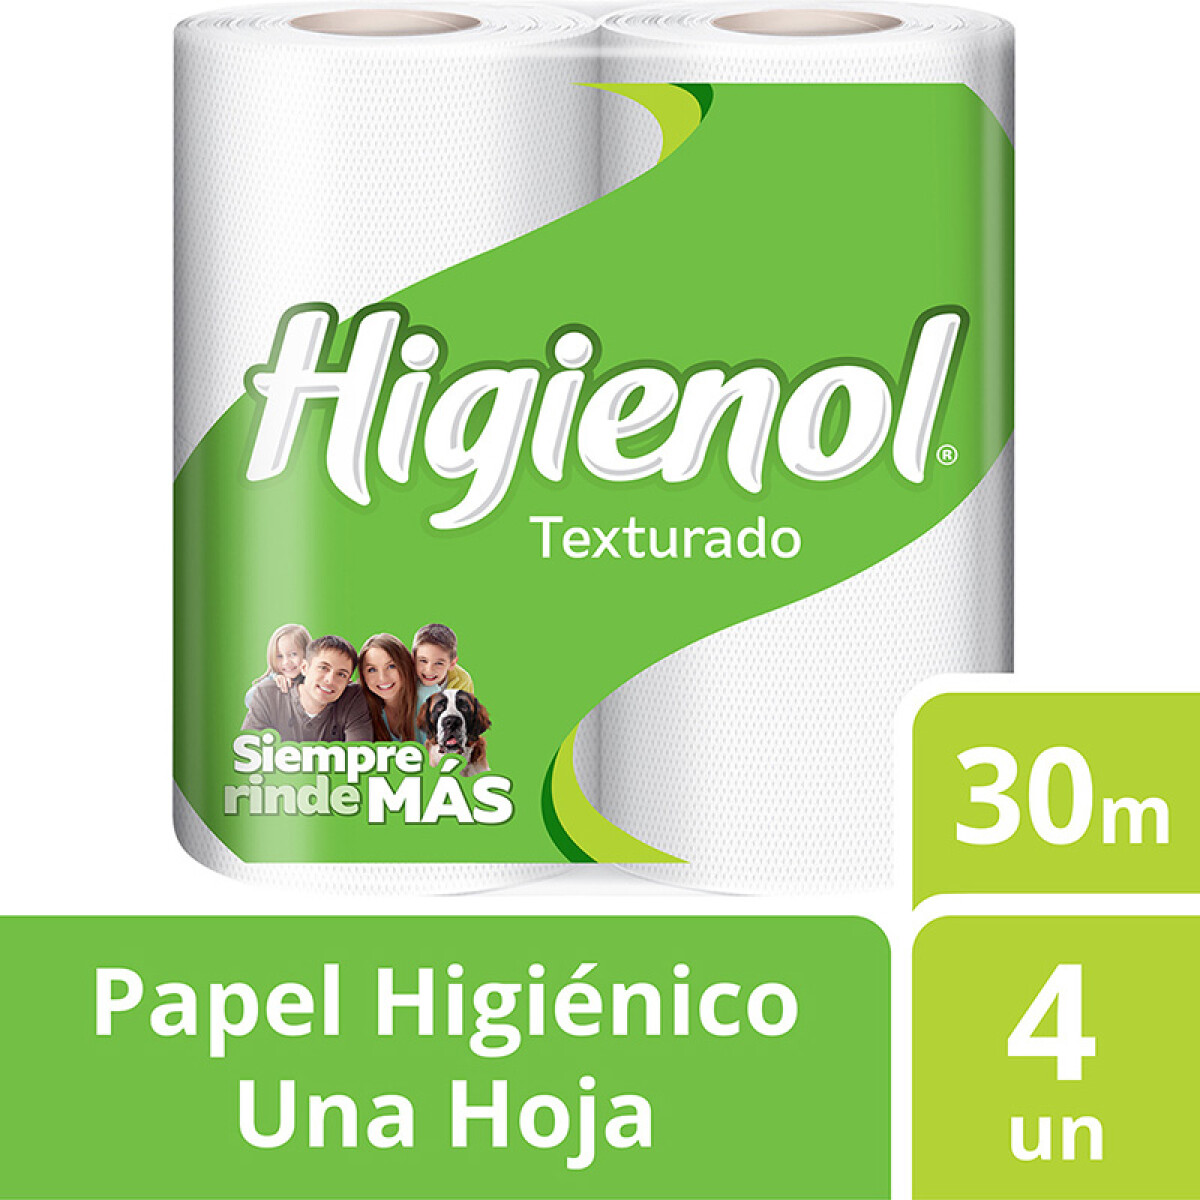 Higienol papel higiénico - Texturado 30m x4 rollos 